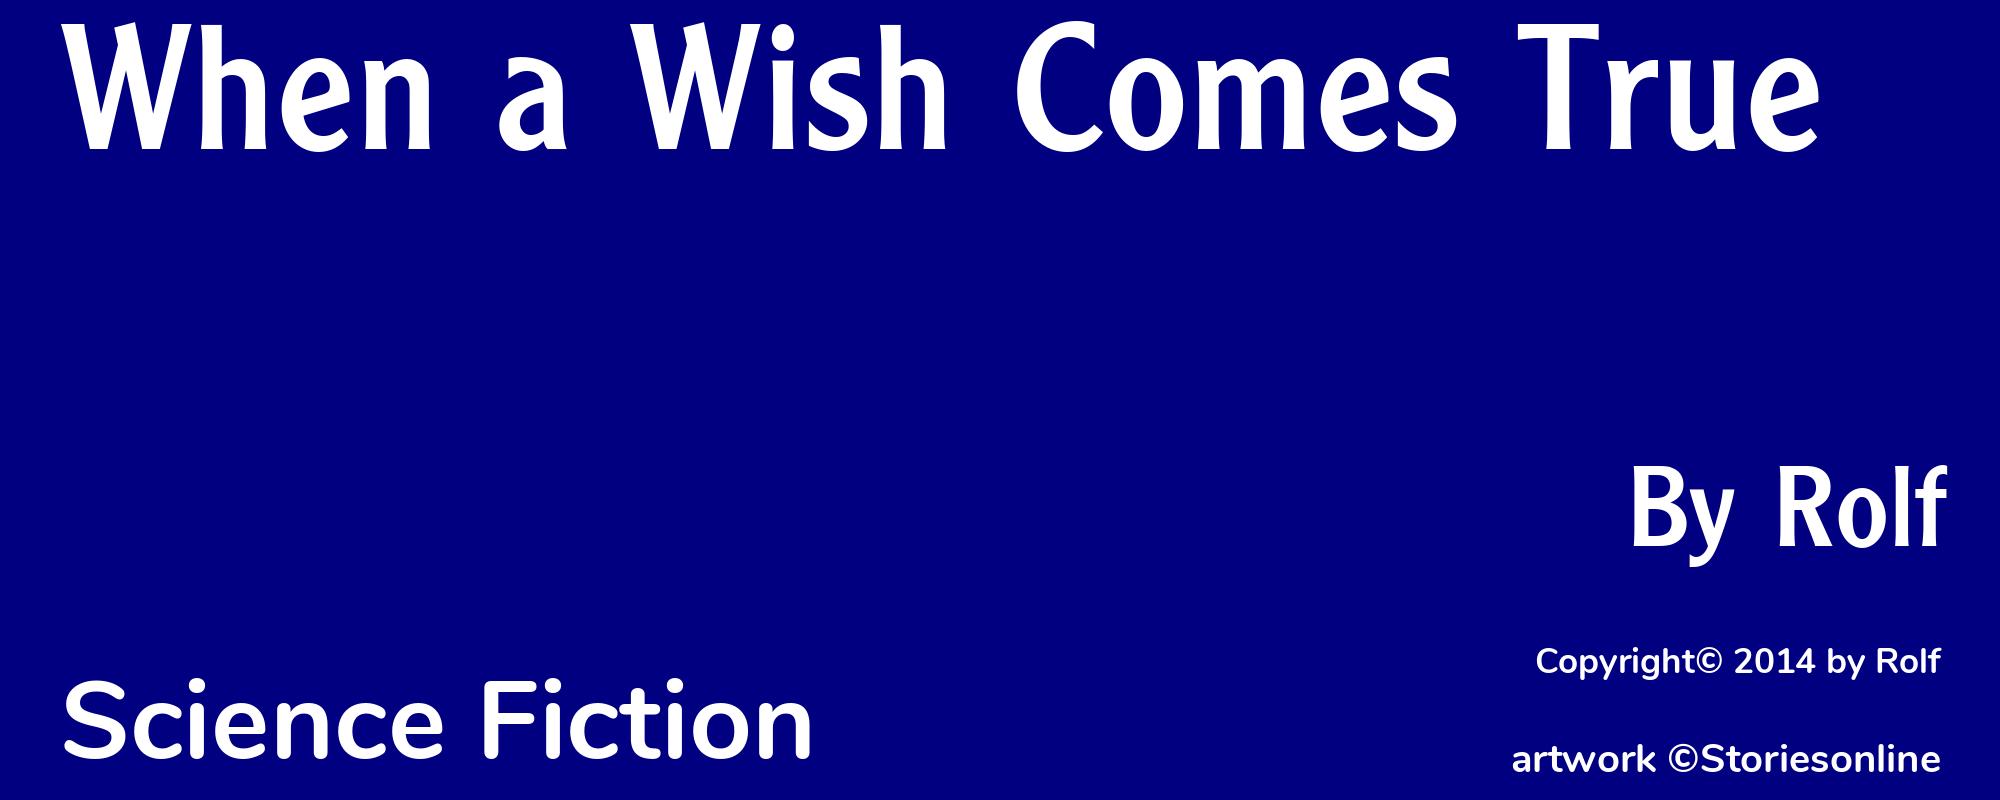 When a Wish Comes True - Cover